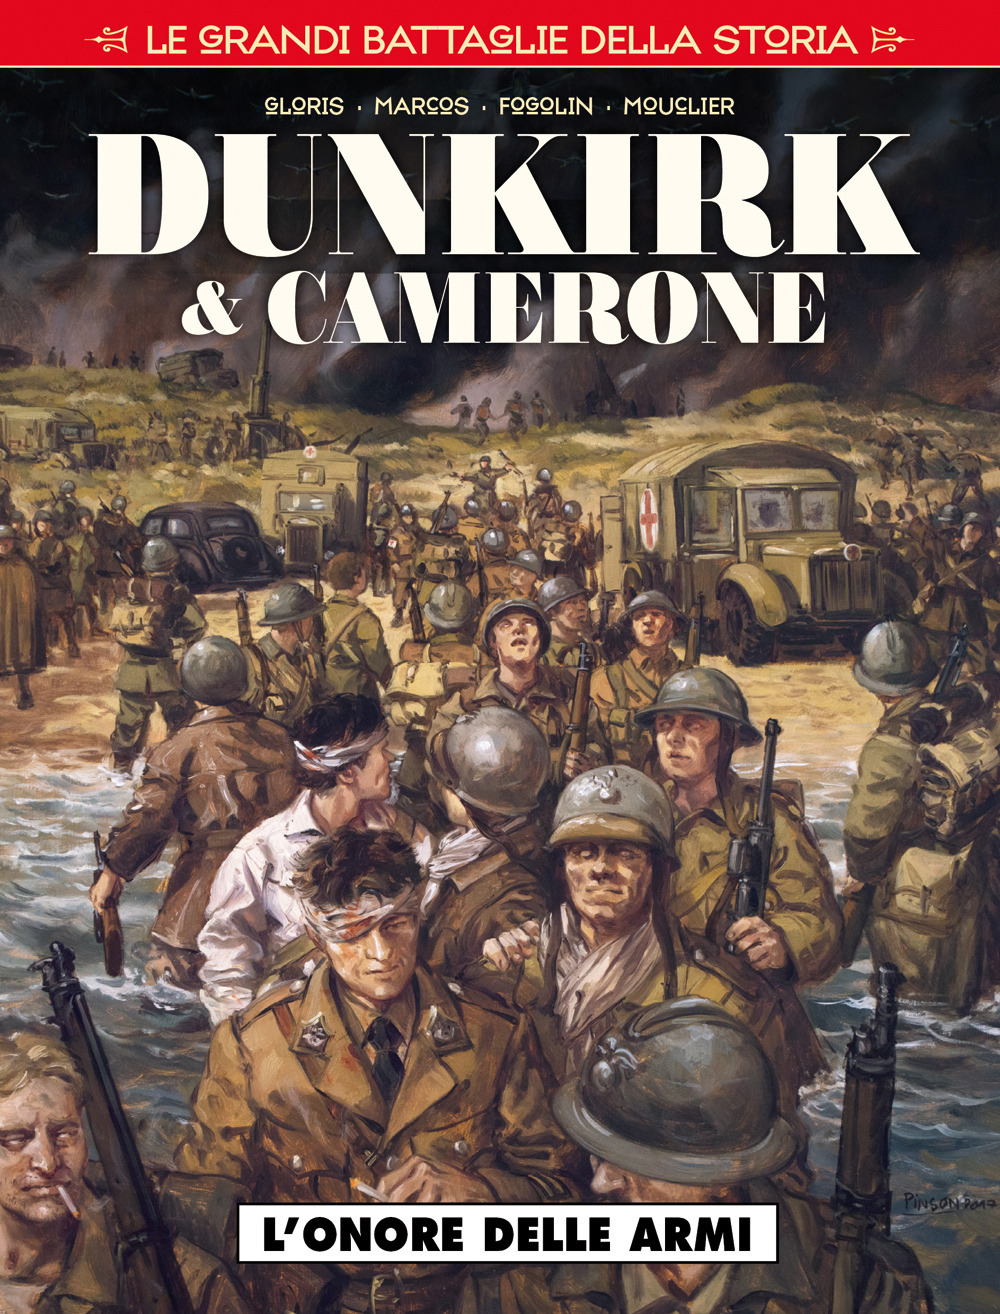 Le grandi battaglie della storia. Vol. 3: L' onore delle armi. Dunkirk & Camerone